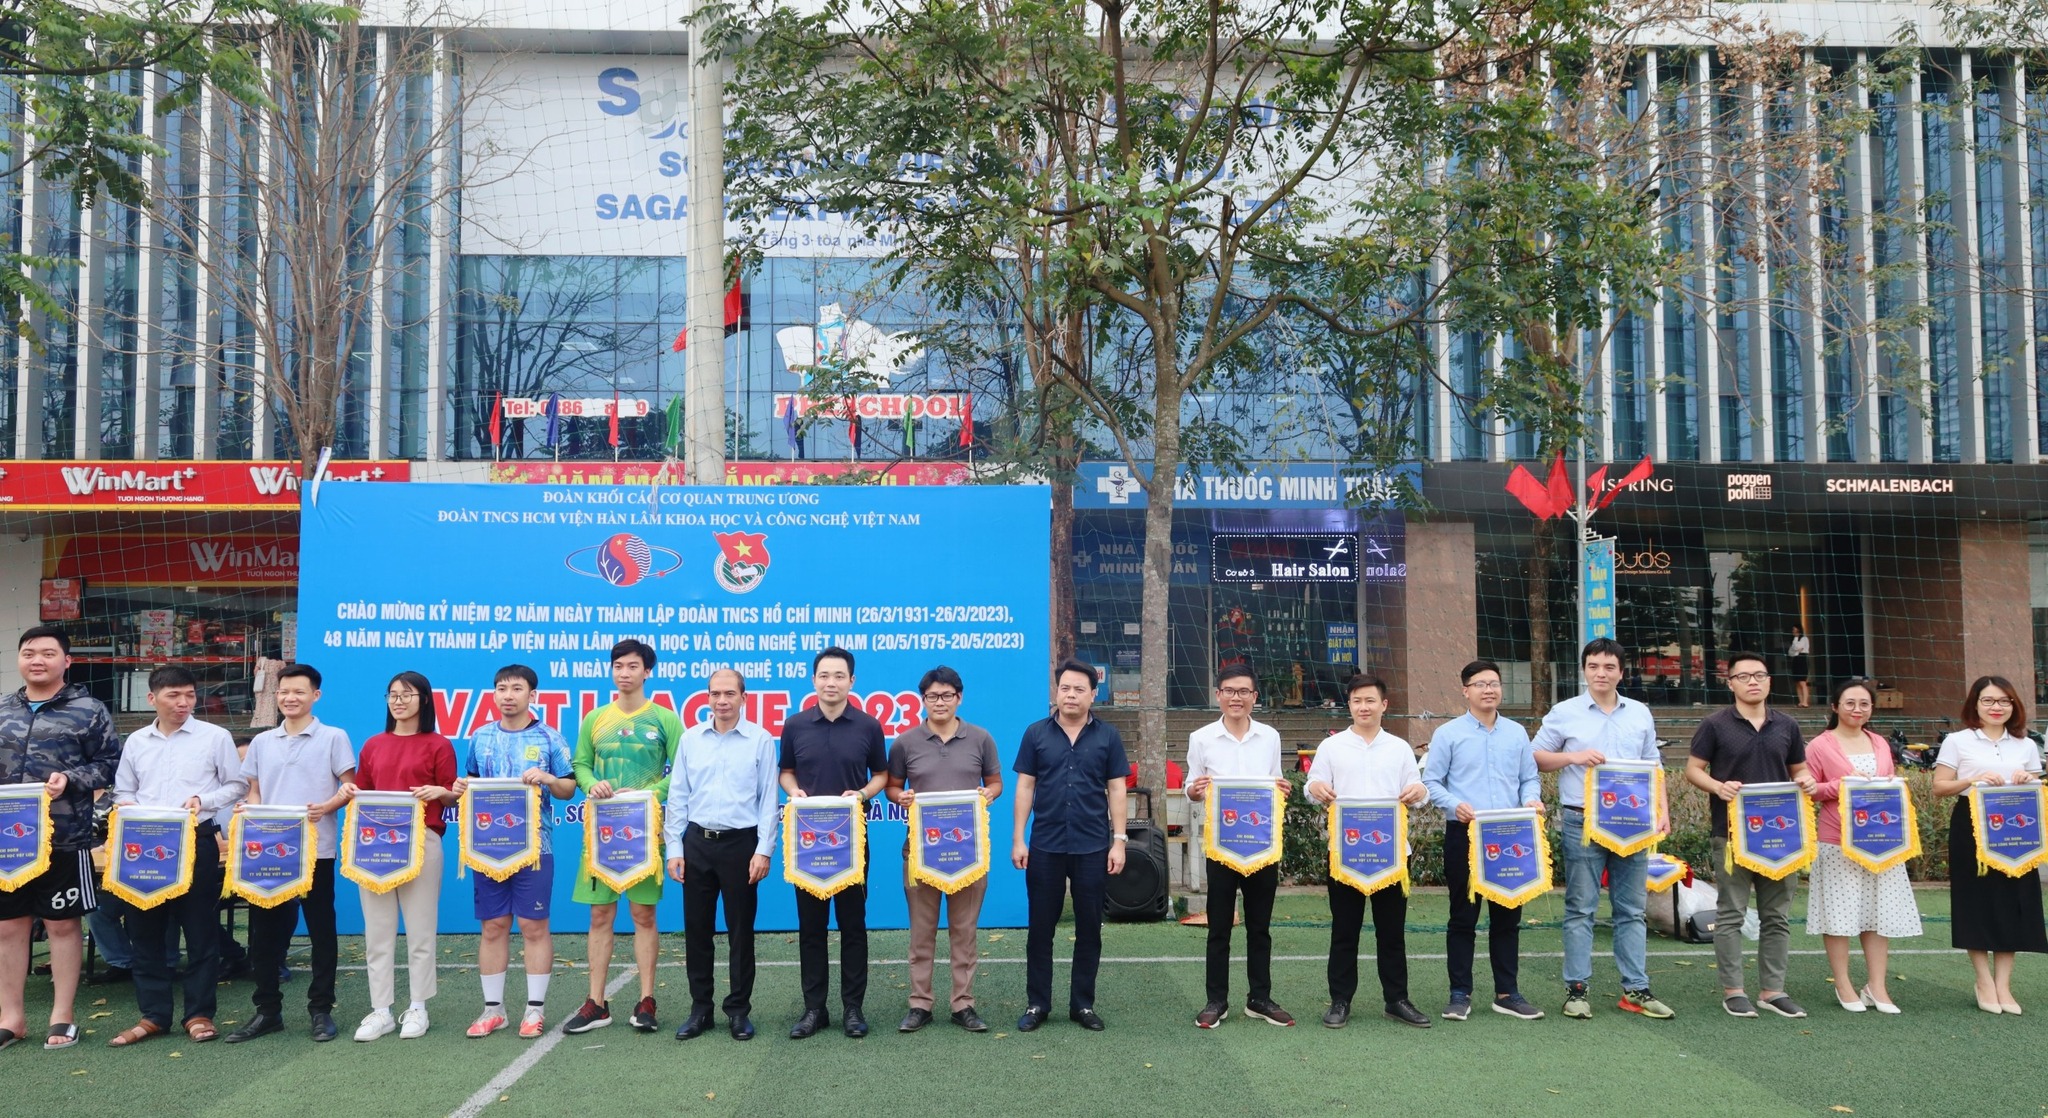 Khai mạc Giải Bóng đá Viện Hàn lâm Khoa học và Công nghệ Việt Nam khu vực phía Bắc